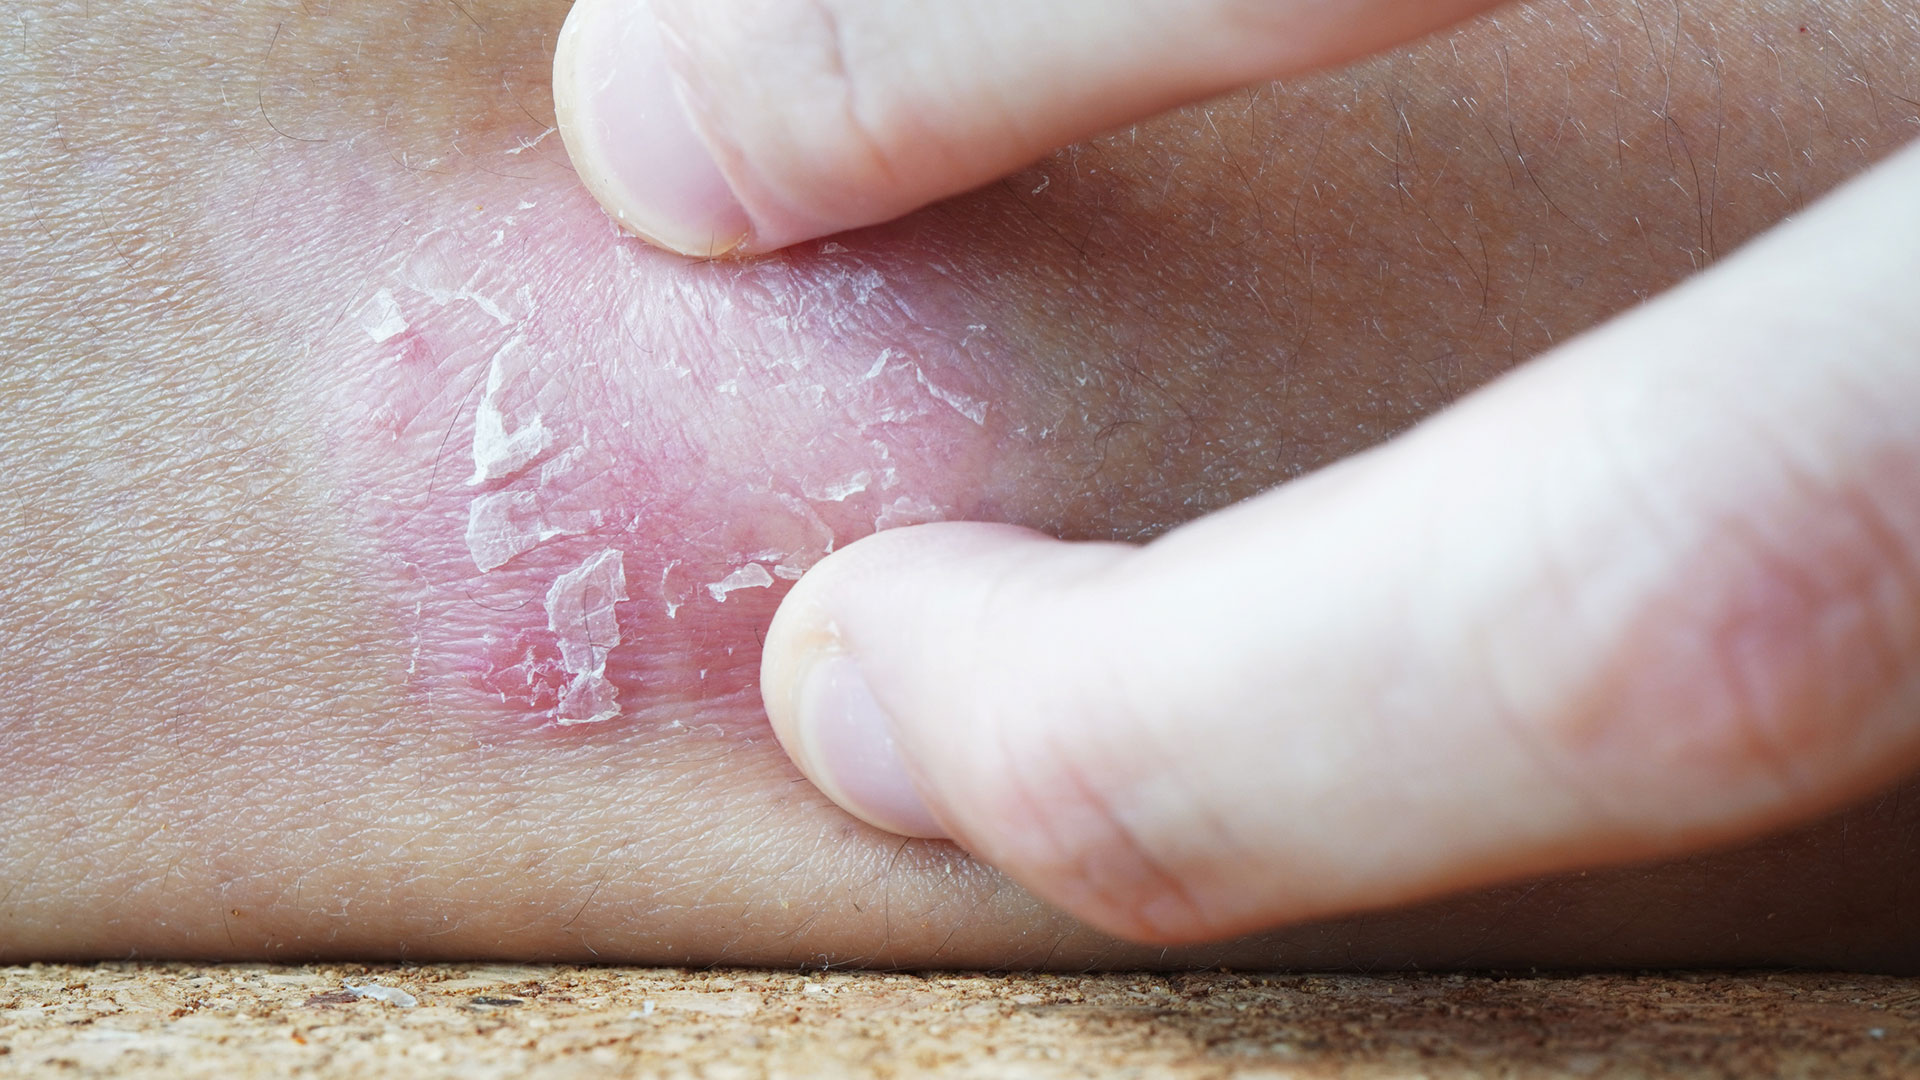 La psoriasis se manifiesta en lesiones rojas cubiertas por escamas blancas y secas que se localizan con mayor frecuencia en los codos, las rodillas, el tronco y el cuero cabelludo (Gettyimages)